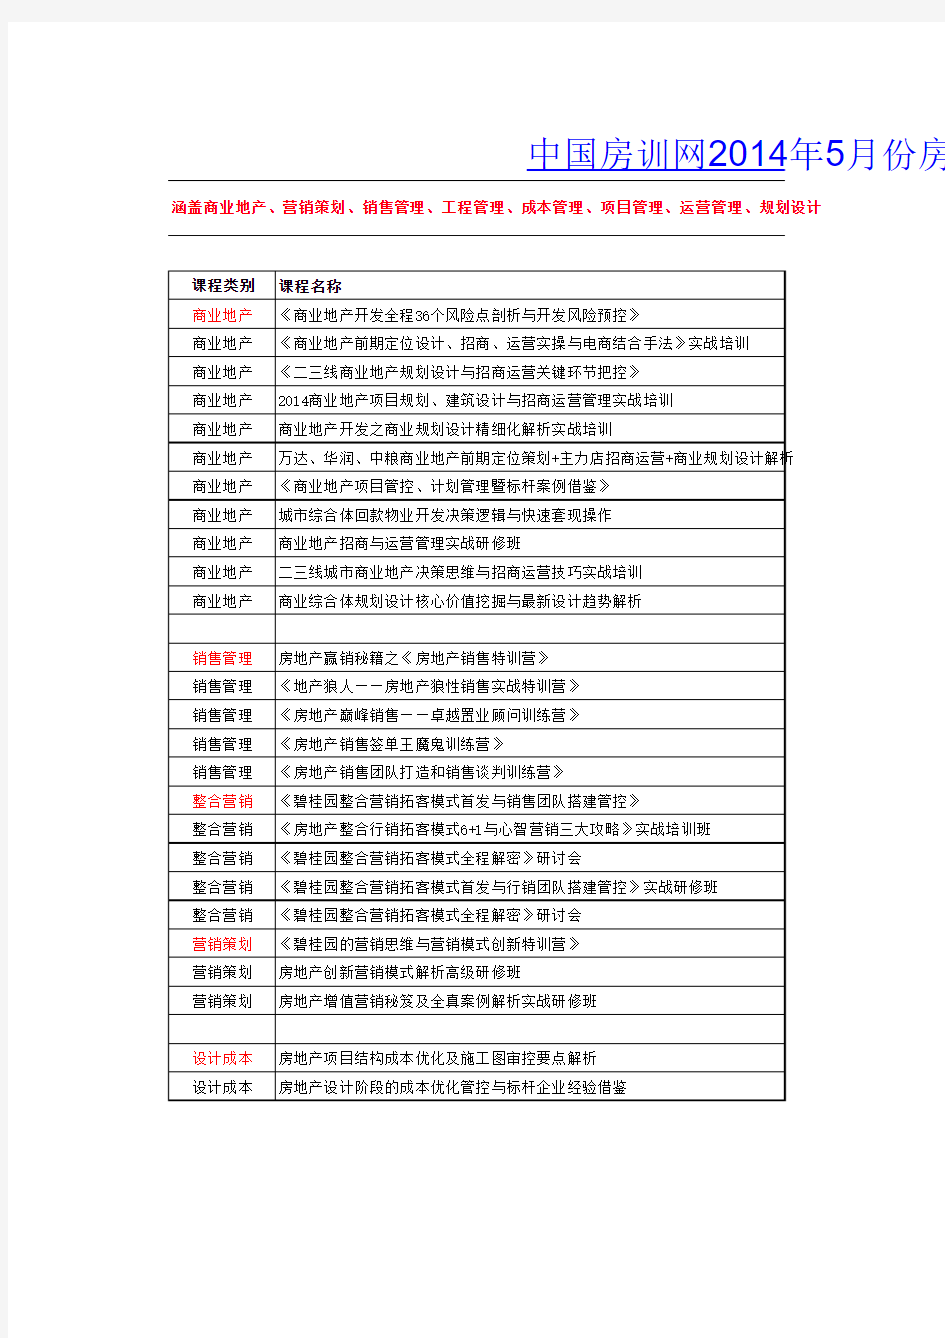 2014年5月房地产精品公开课课程安排表(共计82场)——中国房训网